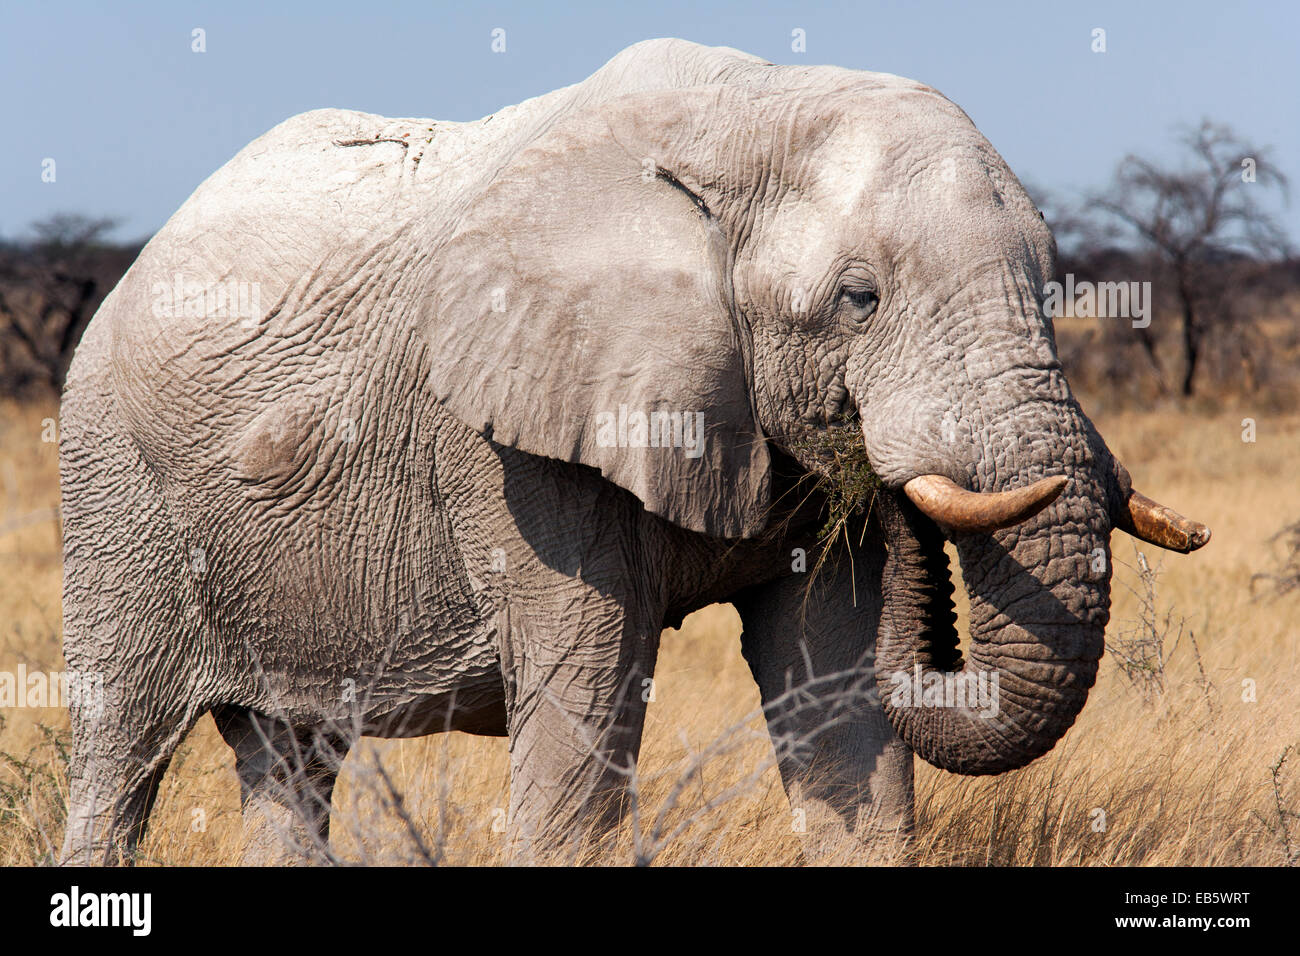 L'éléphant africain (Loxodonta africana) - Etosha National Park - Namibie, Afrique Banque D'Images